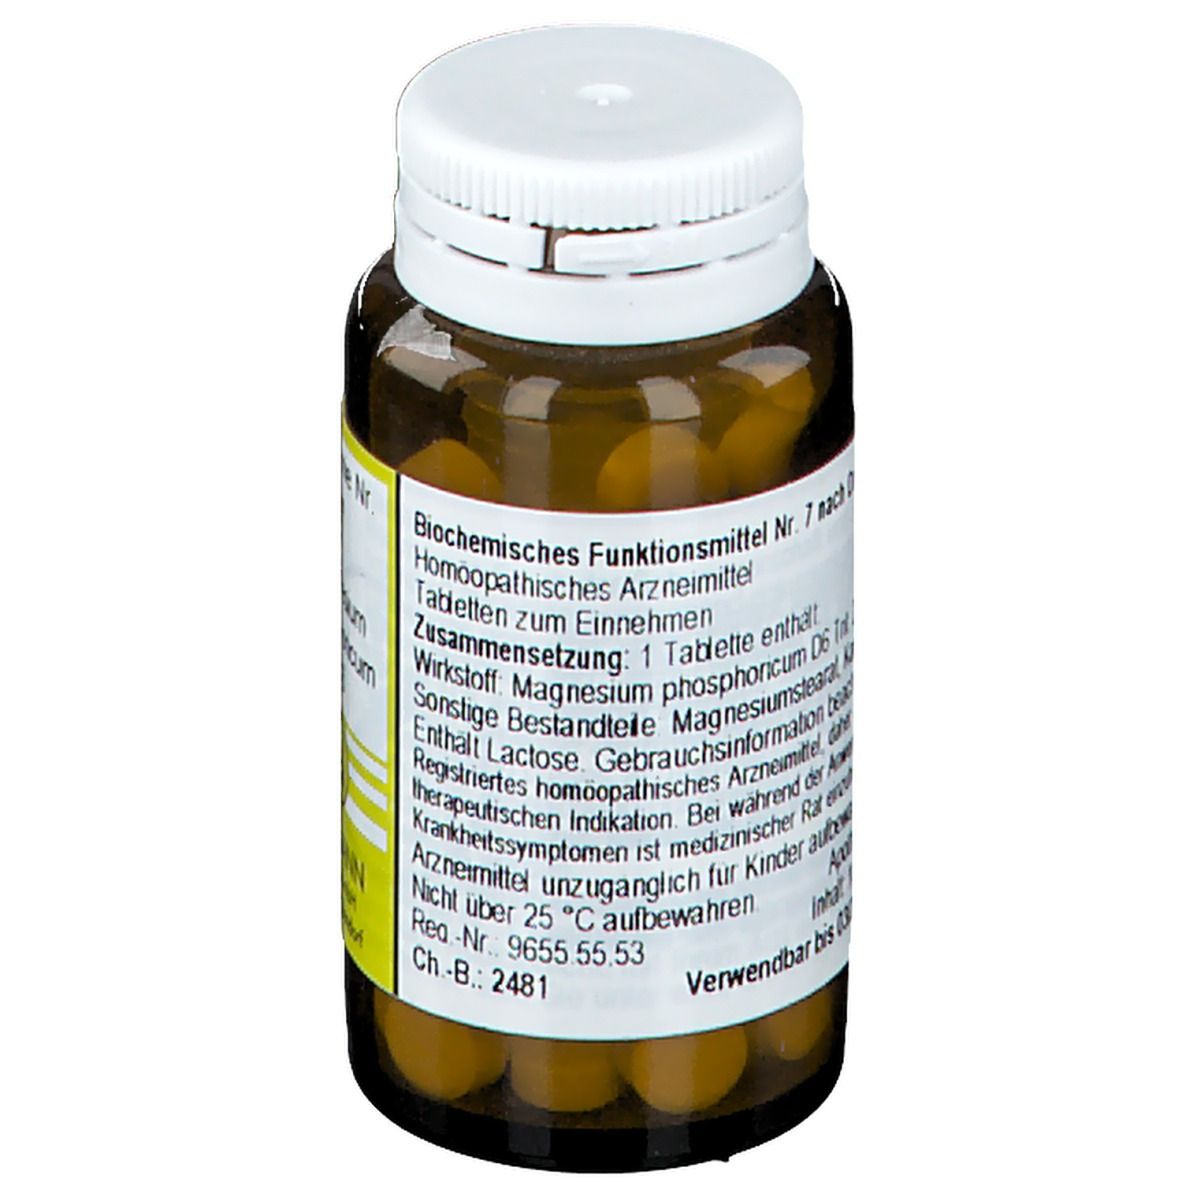 Biochemie 7 Magnesium Phosphoricum D 6 Tabletten